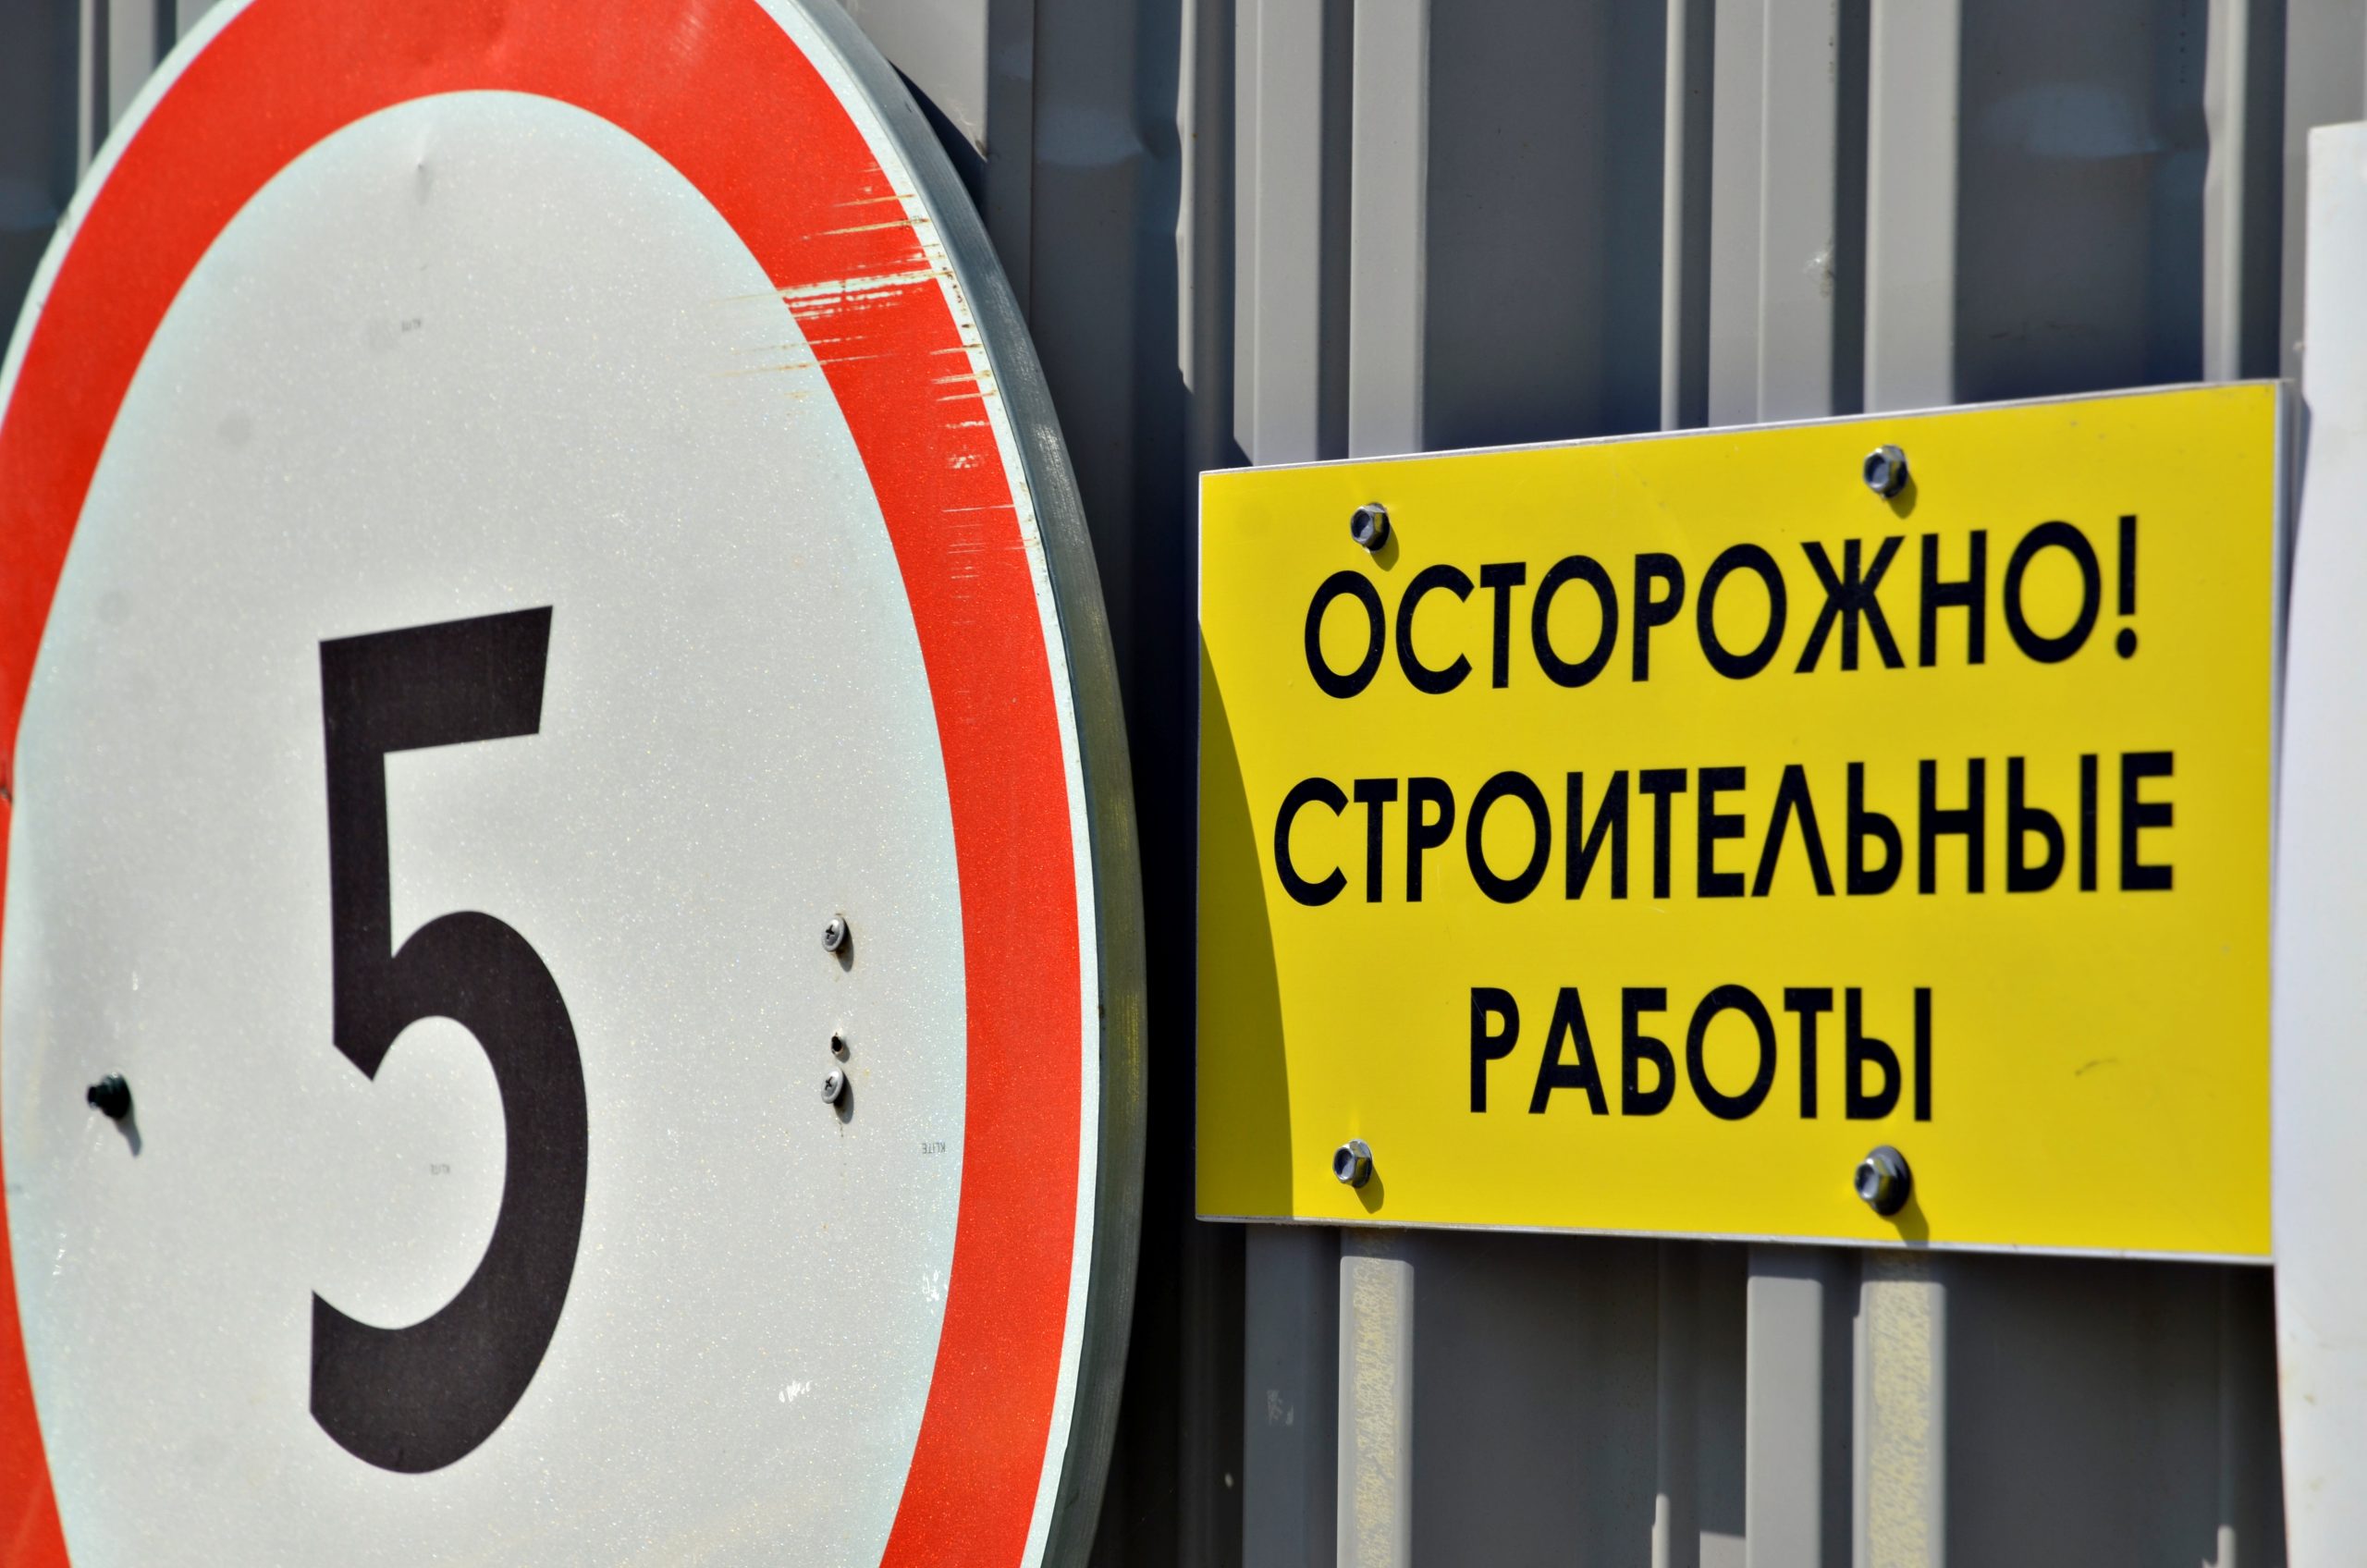 Ограничения введут в связи с началом работ по переустройству инженерных сетей. Фото: сайт мэра Москвы